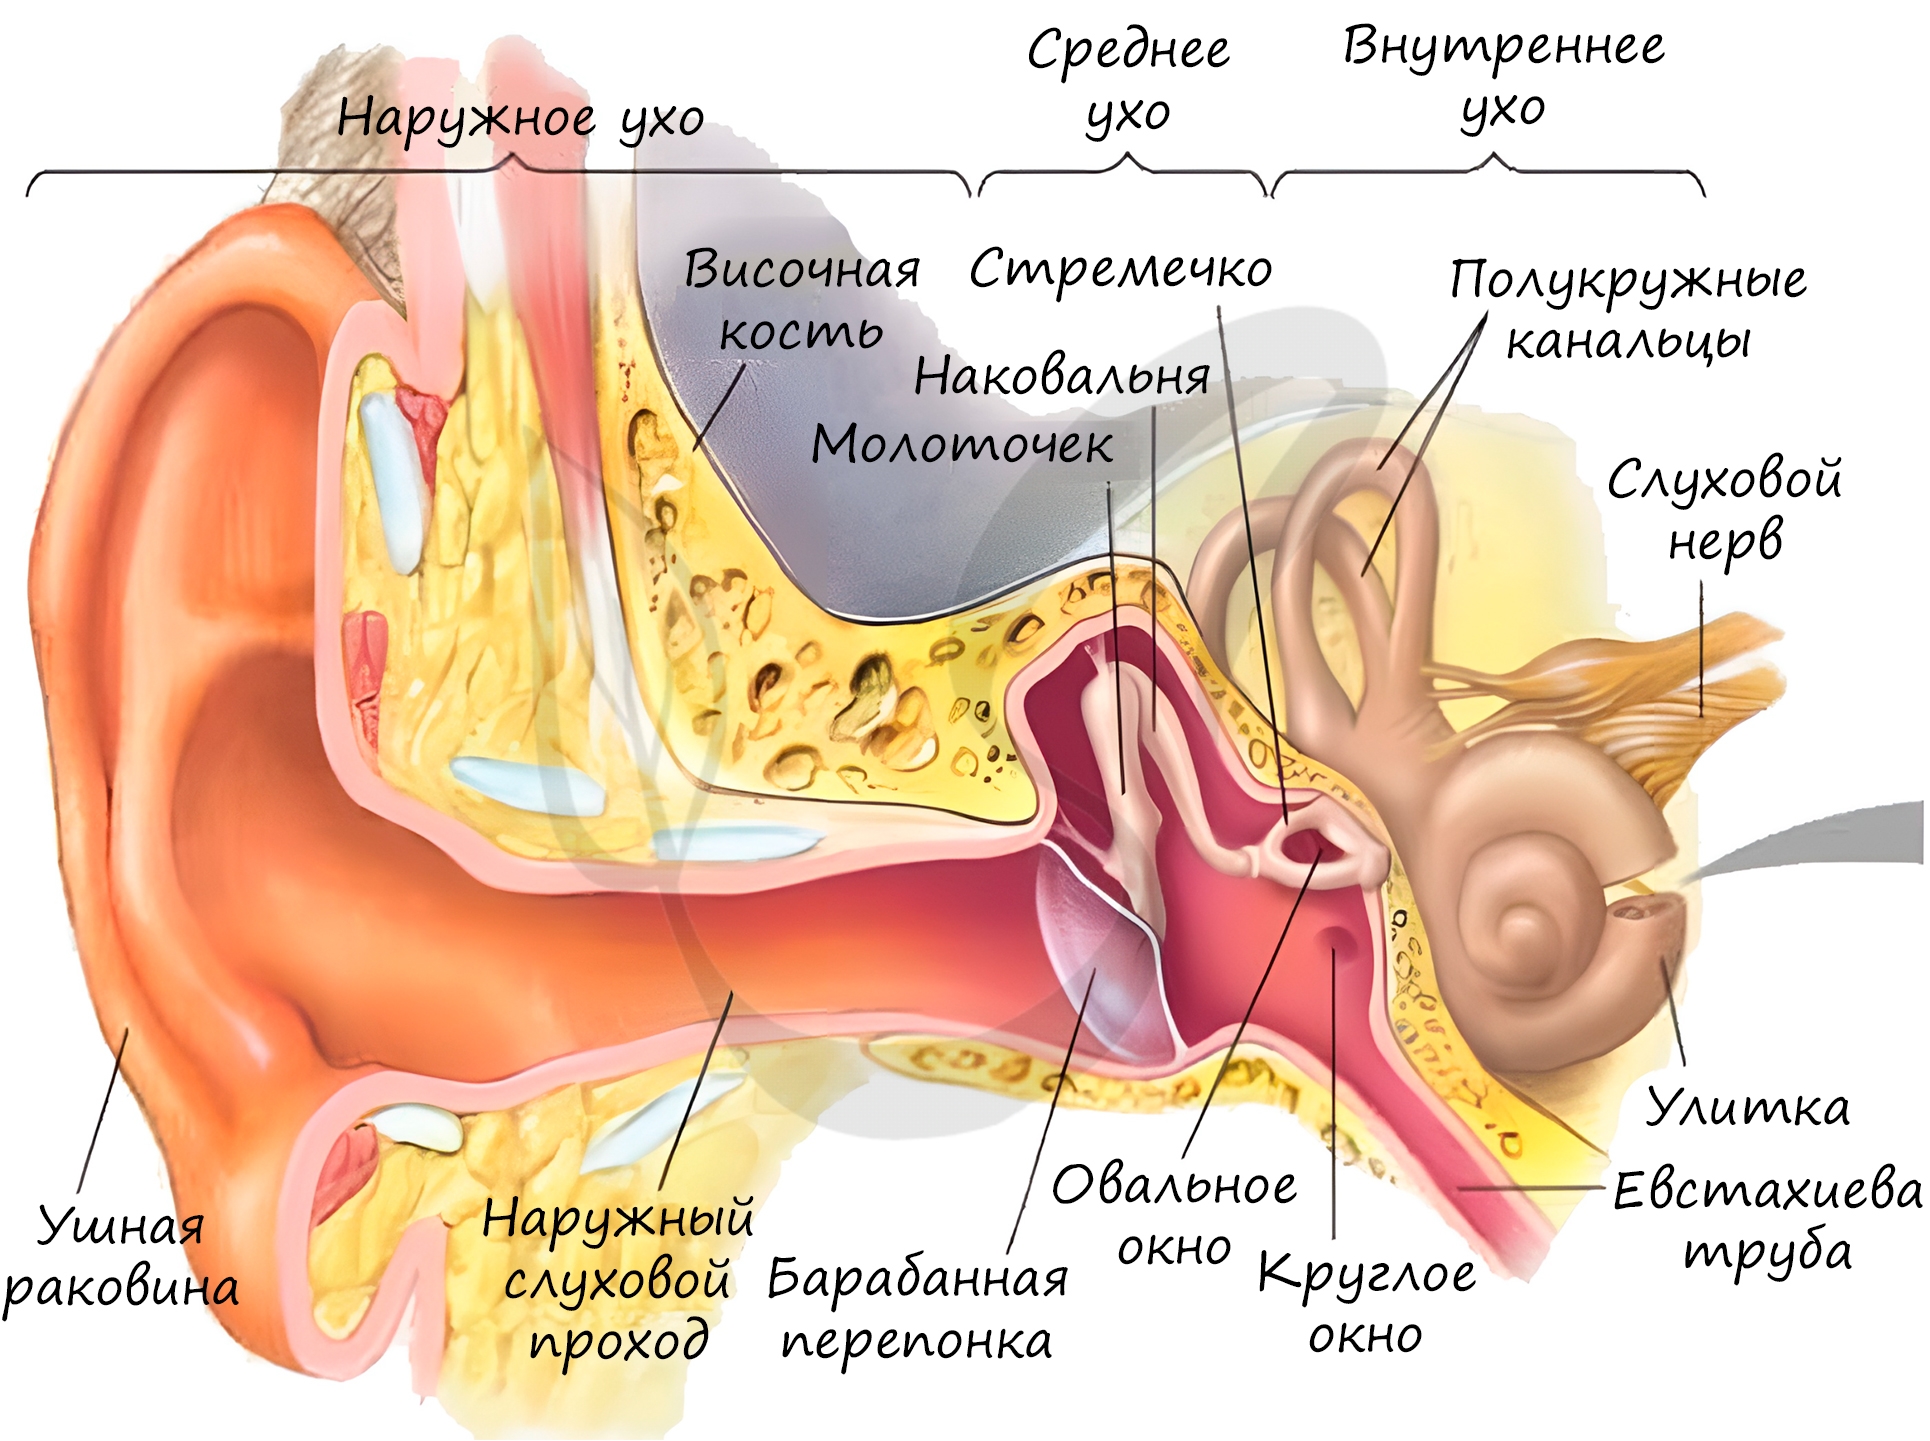 Полость заполненная воздухом в ухе. Строение уха человека евстахиева труба. Орган слуха наружное ухо среднее ухо внутреннее ухо. Строение наружного уха барабанная перепонка. Орган слуха внутреннее ухо анатомия.